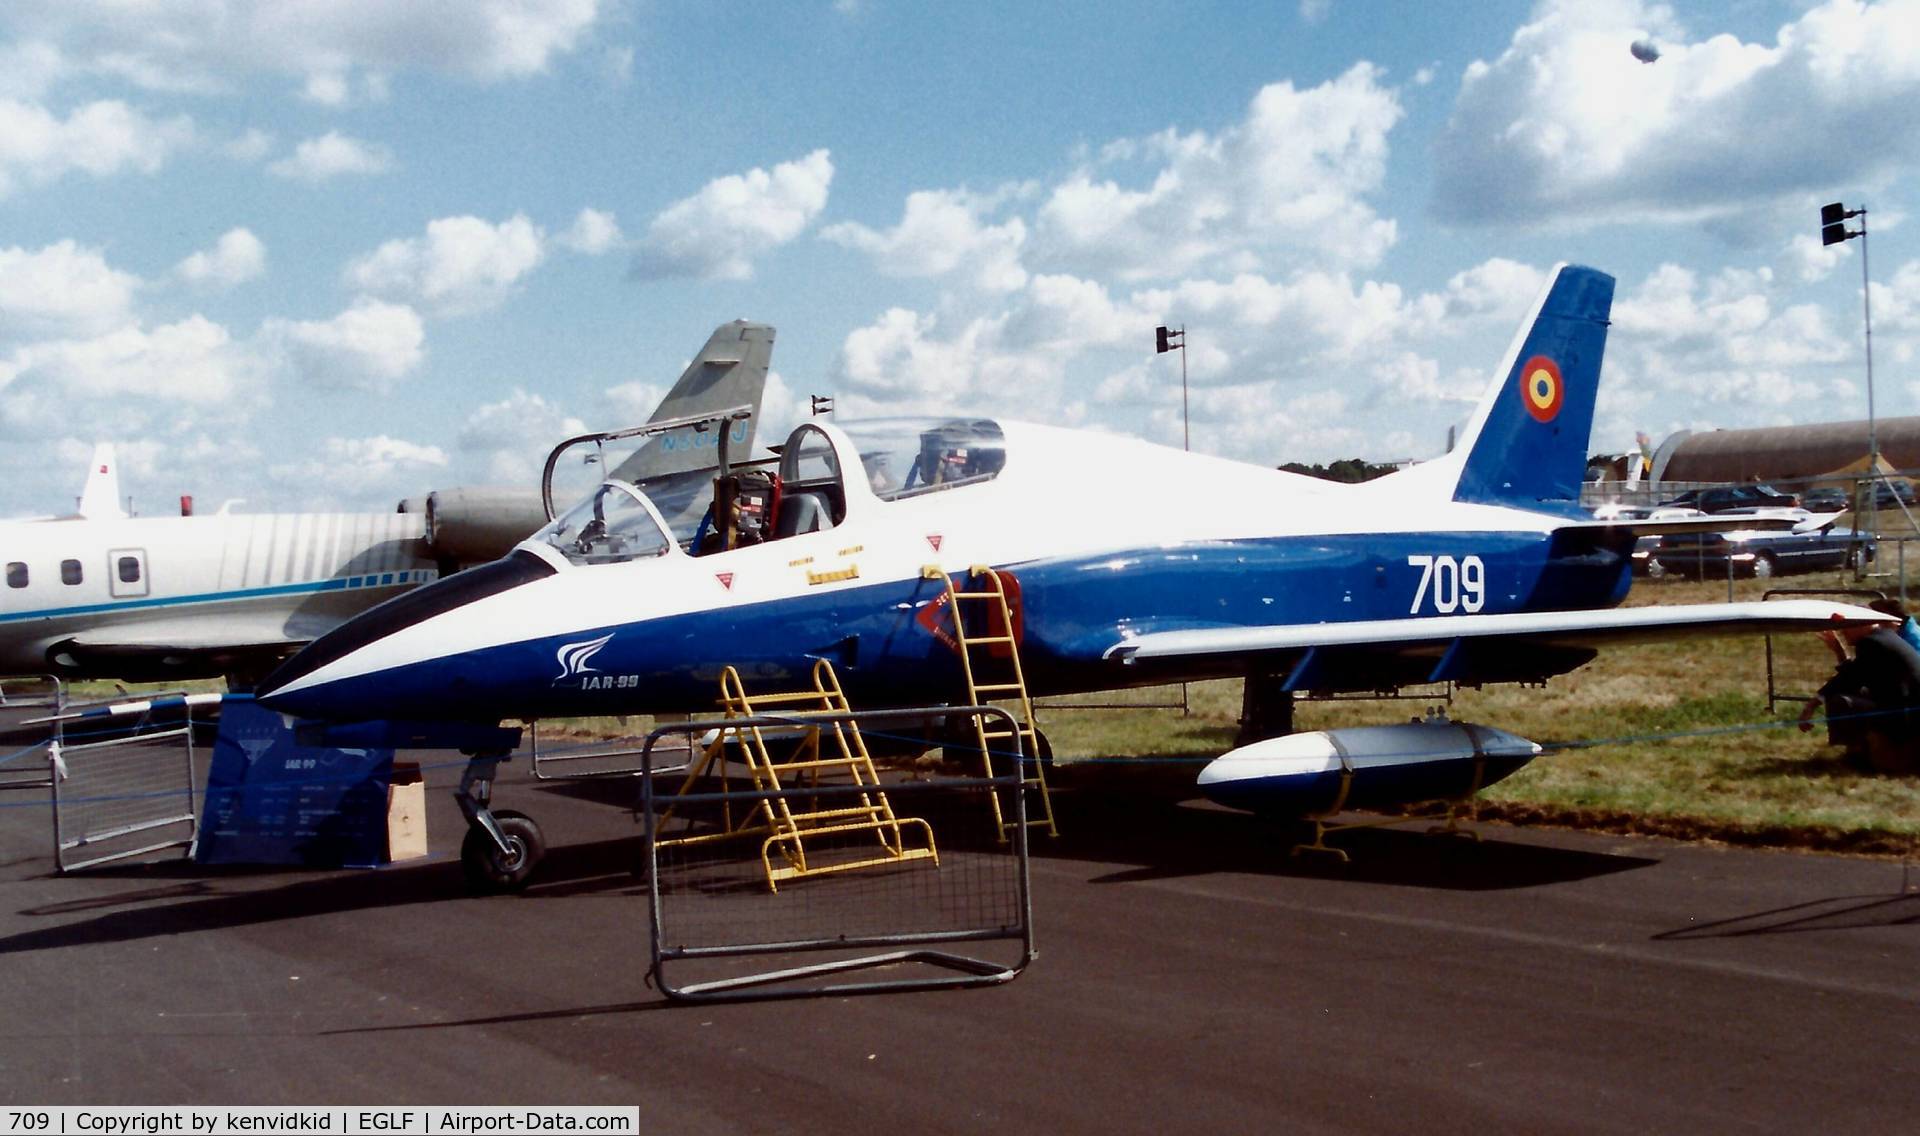 709, IAR IAR-99 Soim C/N Not Found, At the 1990 Farnborough International Air Show.